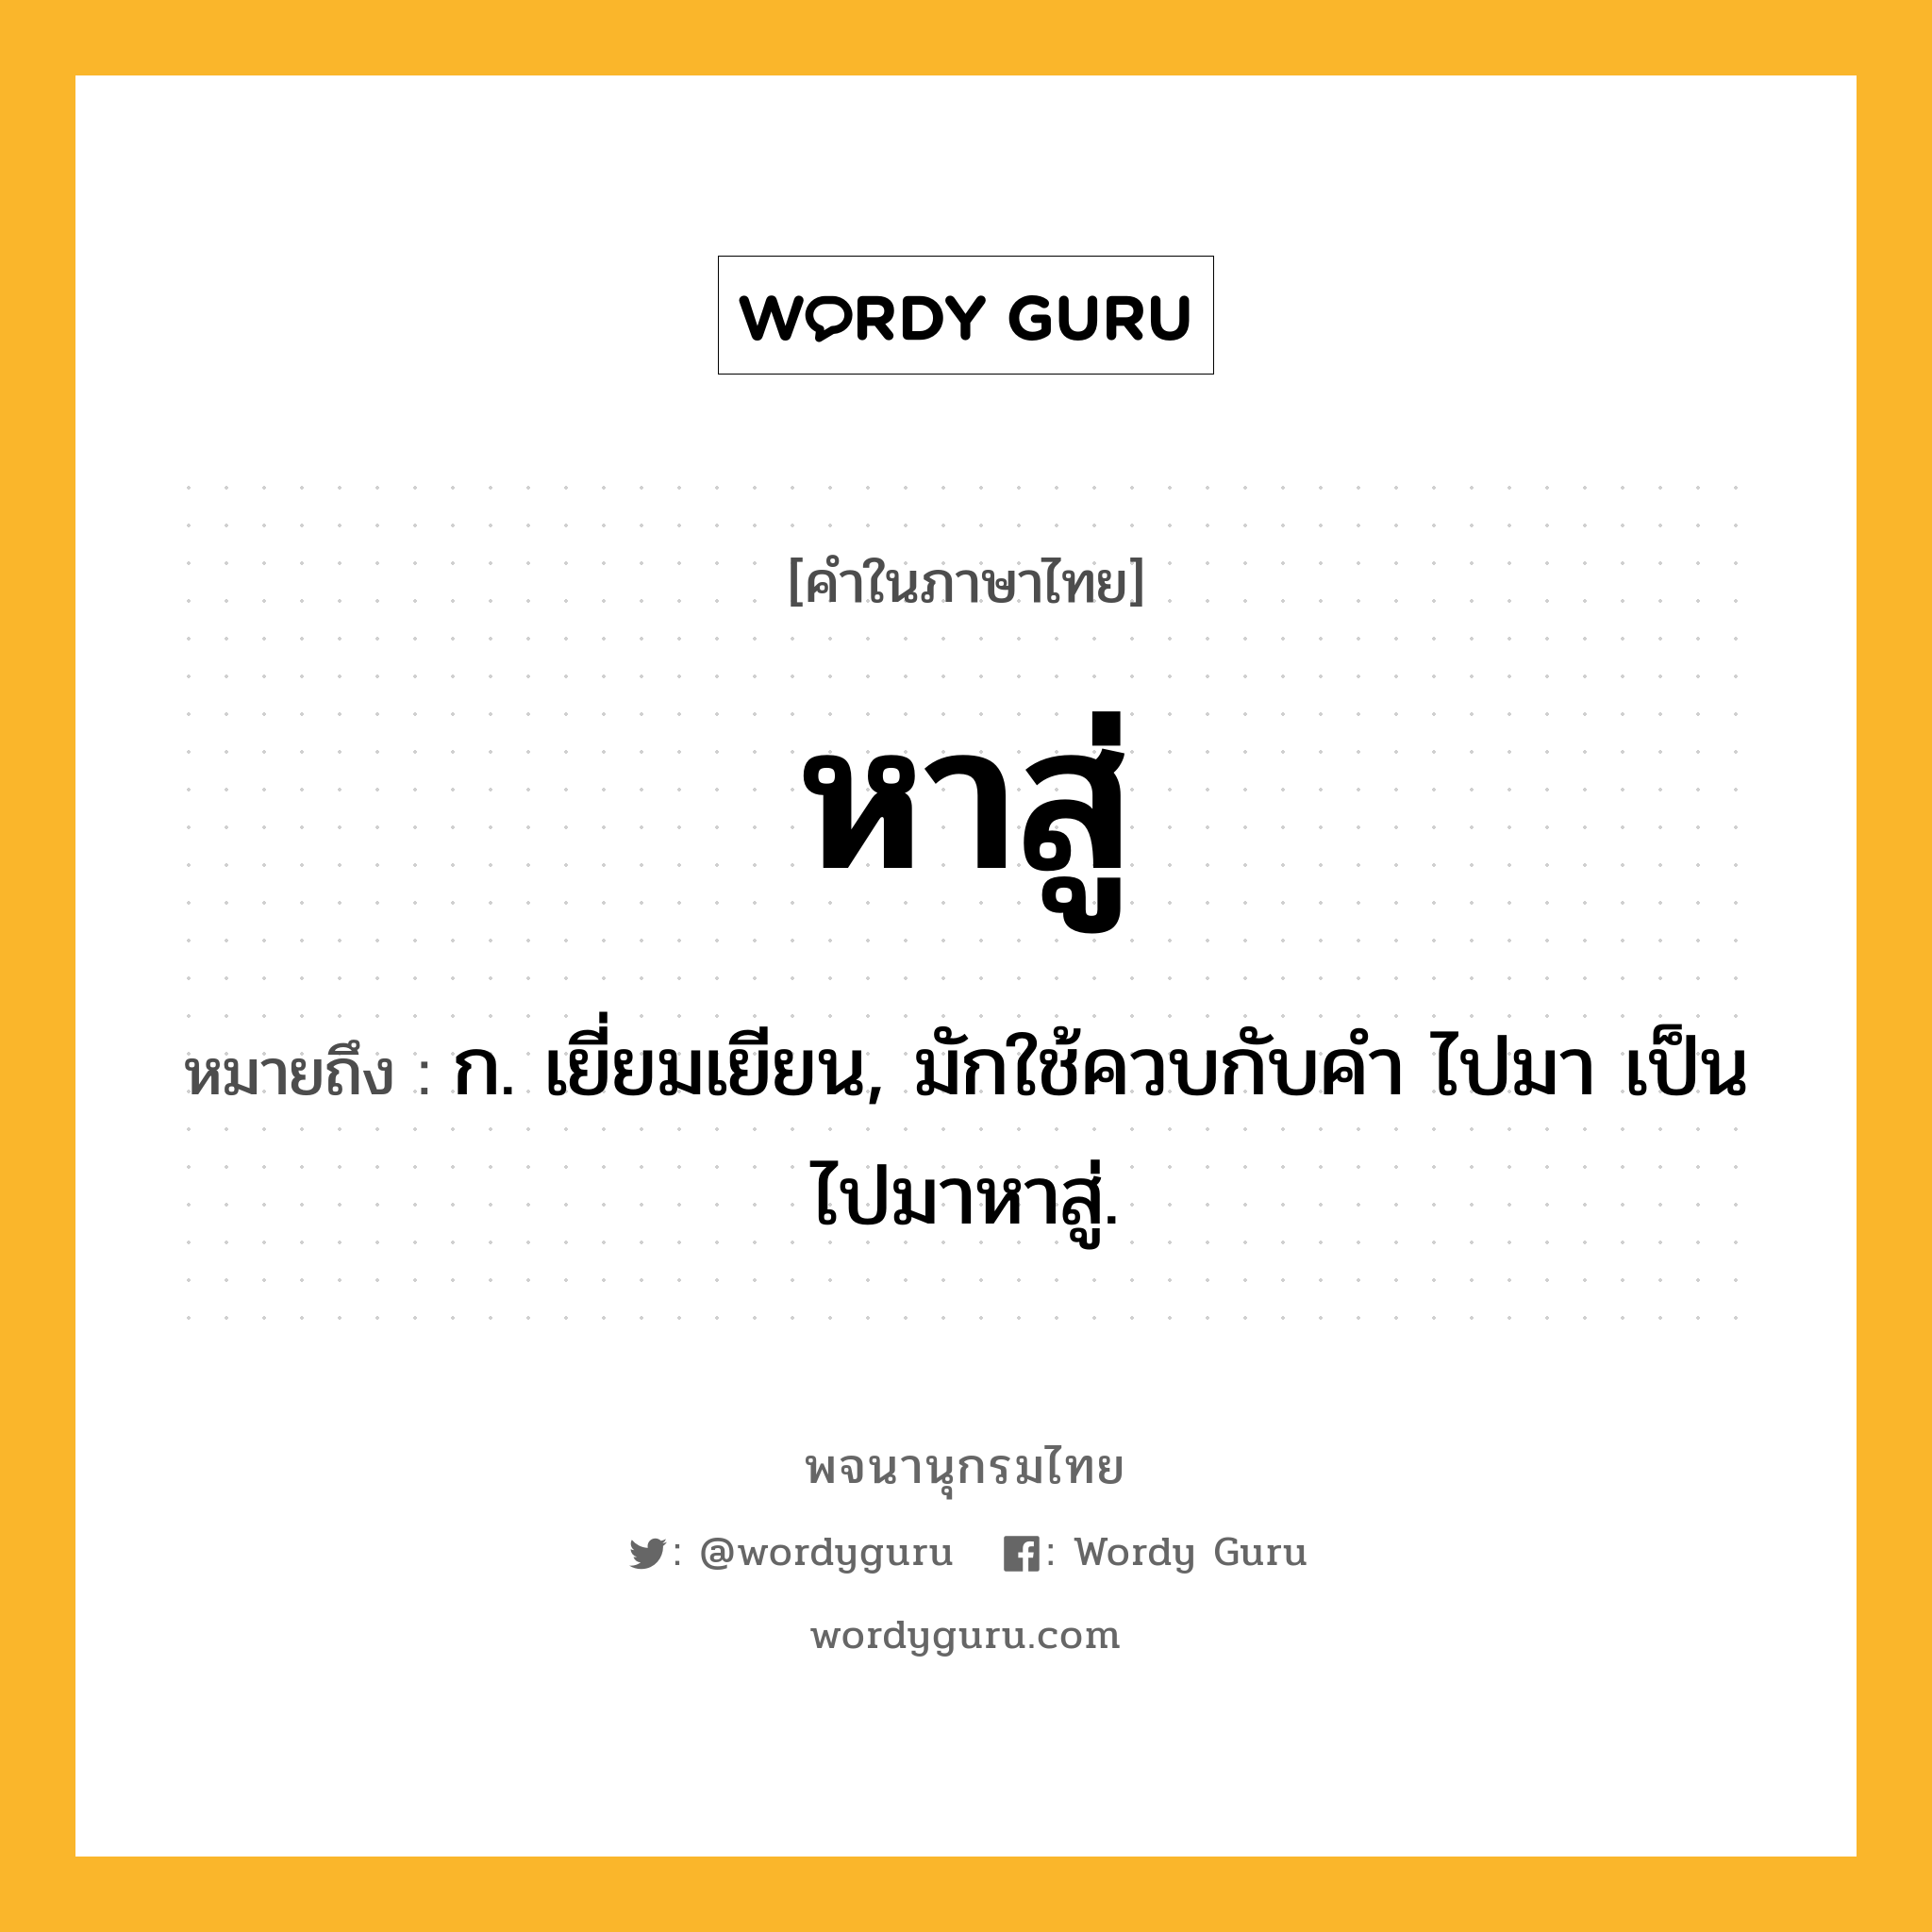 หาสู่ หมายถึงอะไร?, คำในภาษาไทย หาสู่ หมายถึง ก. เยี่ยมเยียน, มักใช้ควบกับคํา ไปมา เป็น ไปมาหาสู่.